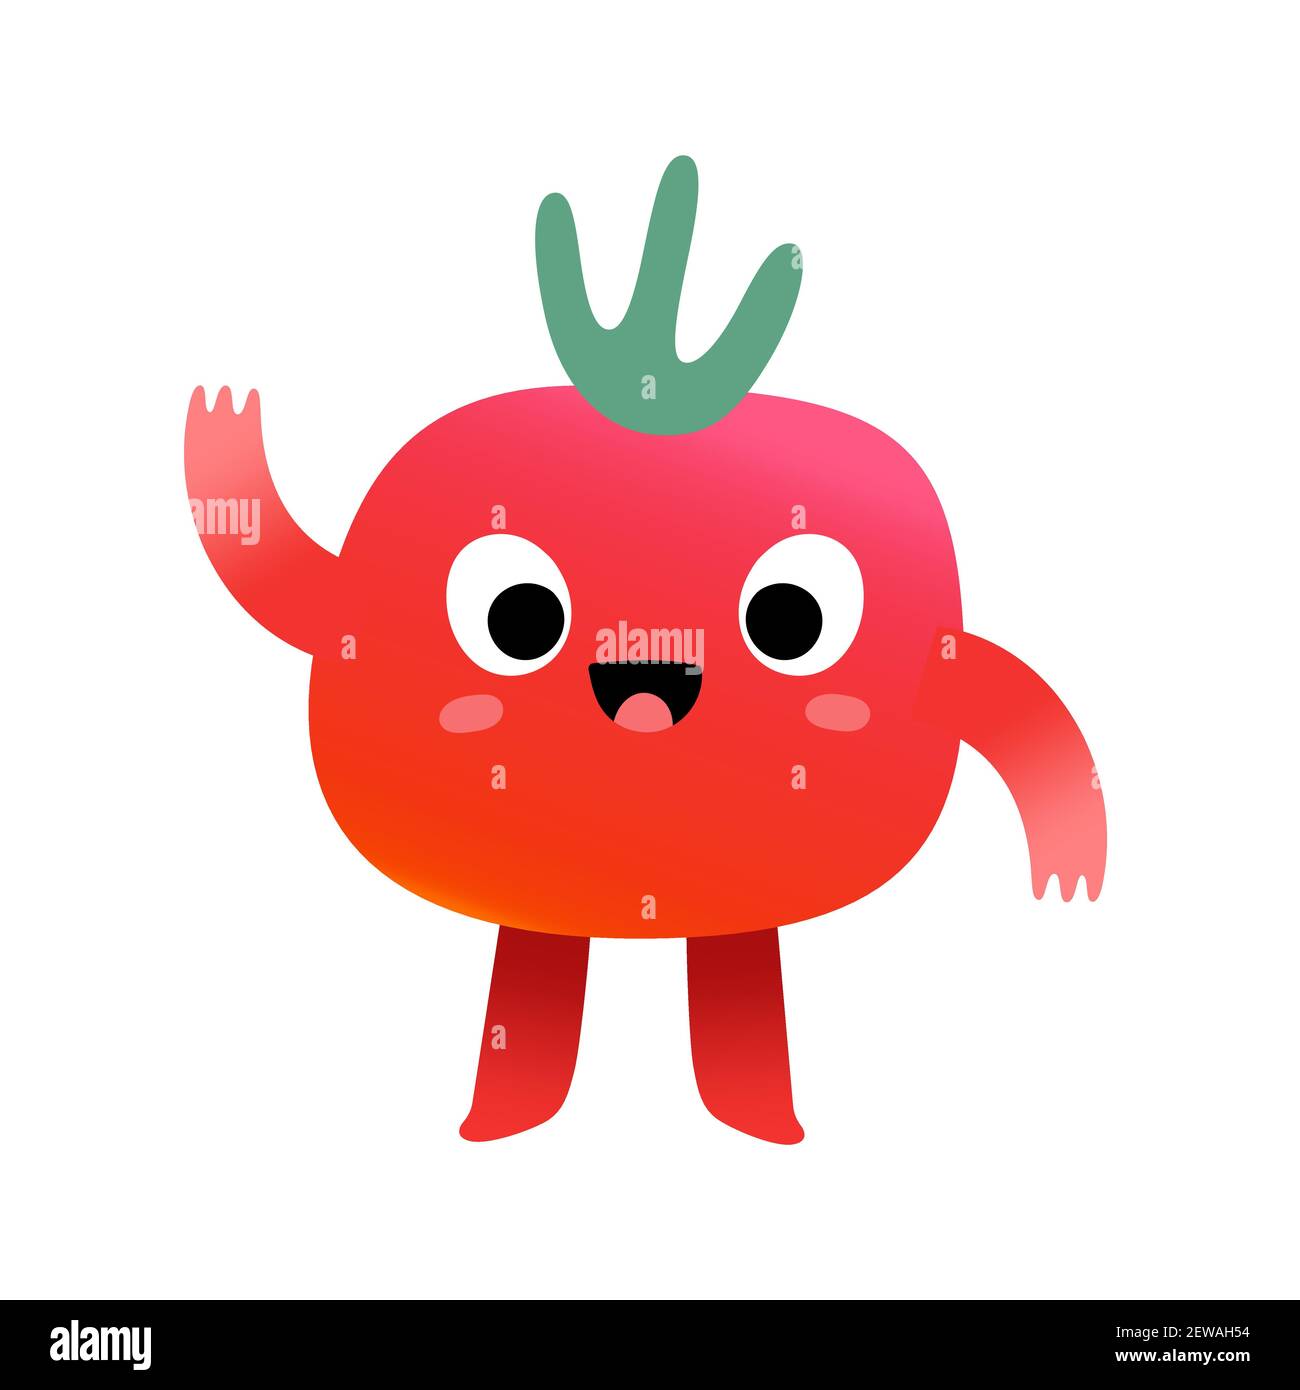 Niedliche Tomate Charakter, süße Kirschtomate Gemüse, kawaii Cartoon Maskottchen mit lustigen Gesichtsausdruck winken hallo, Vektor-Illustration isoliert auf Stock Vektor